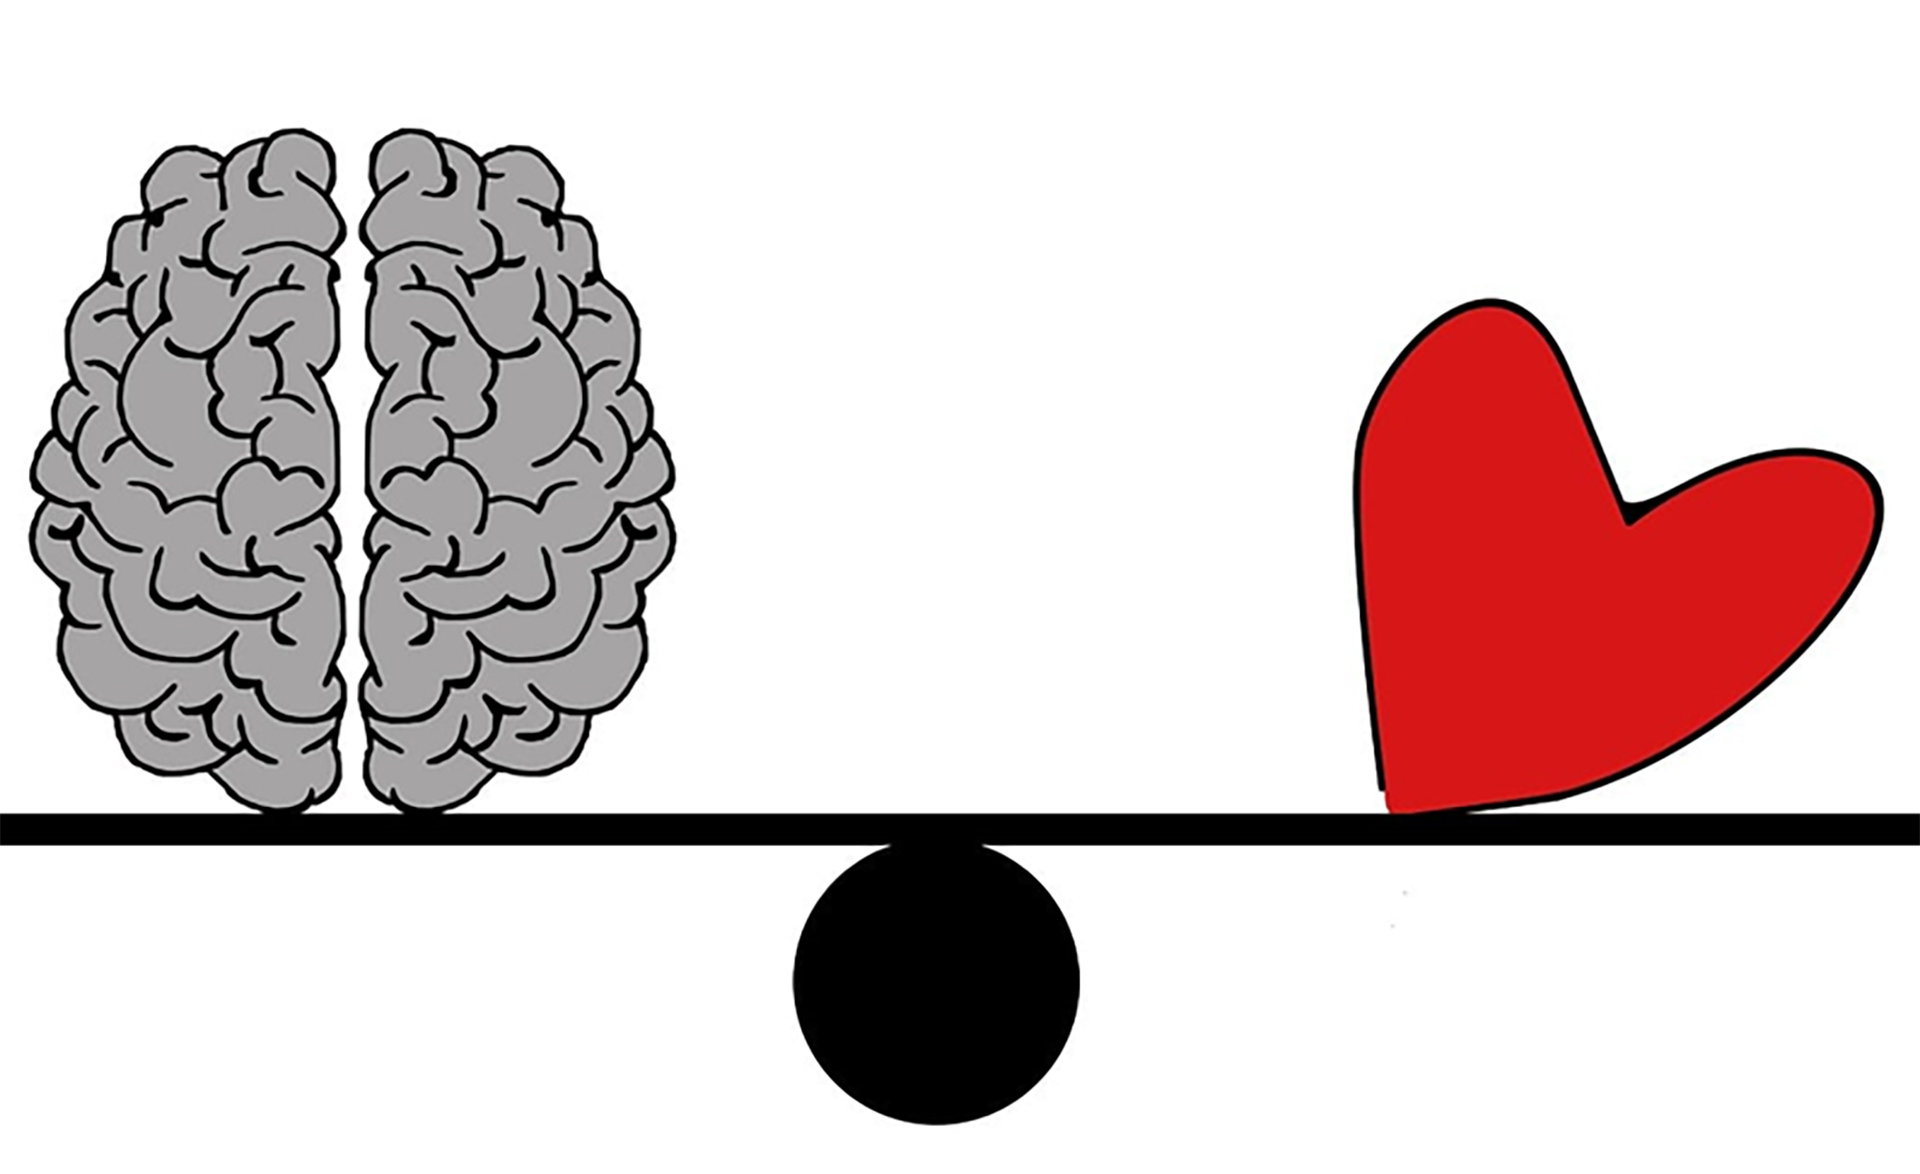 Tecknad bild på en hjärna och ett hjärta.